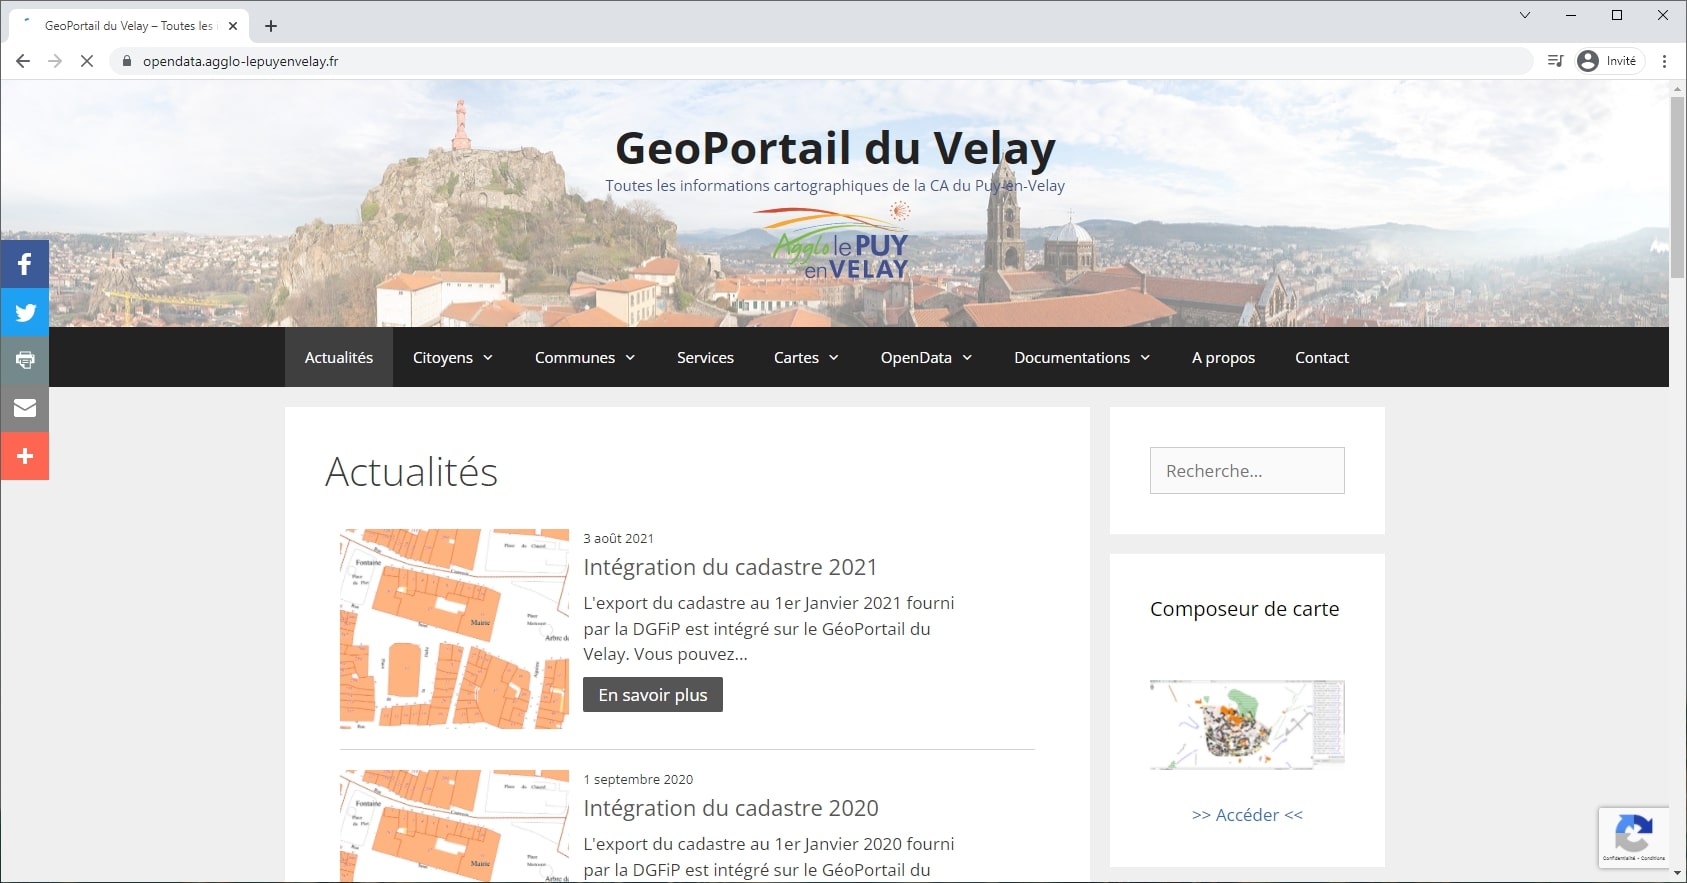 Interface web Le Puy en Velay (France)